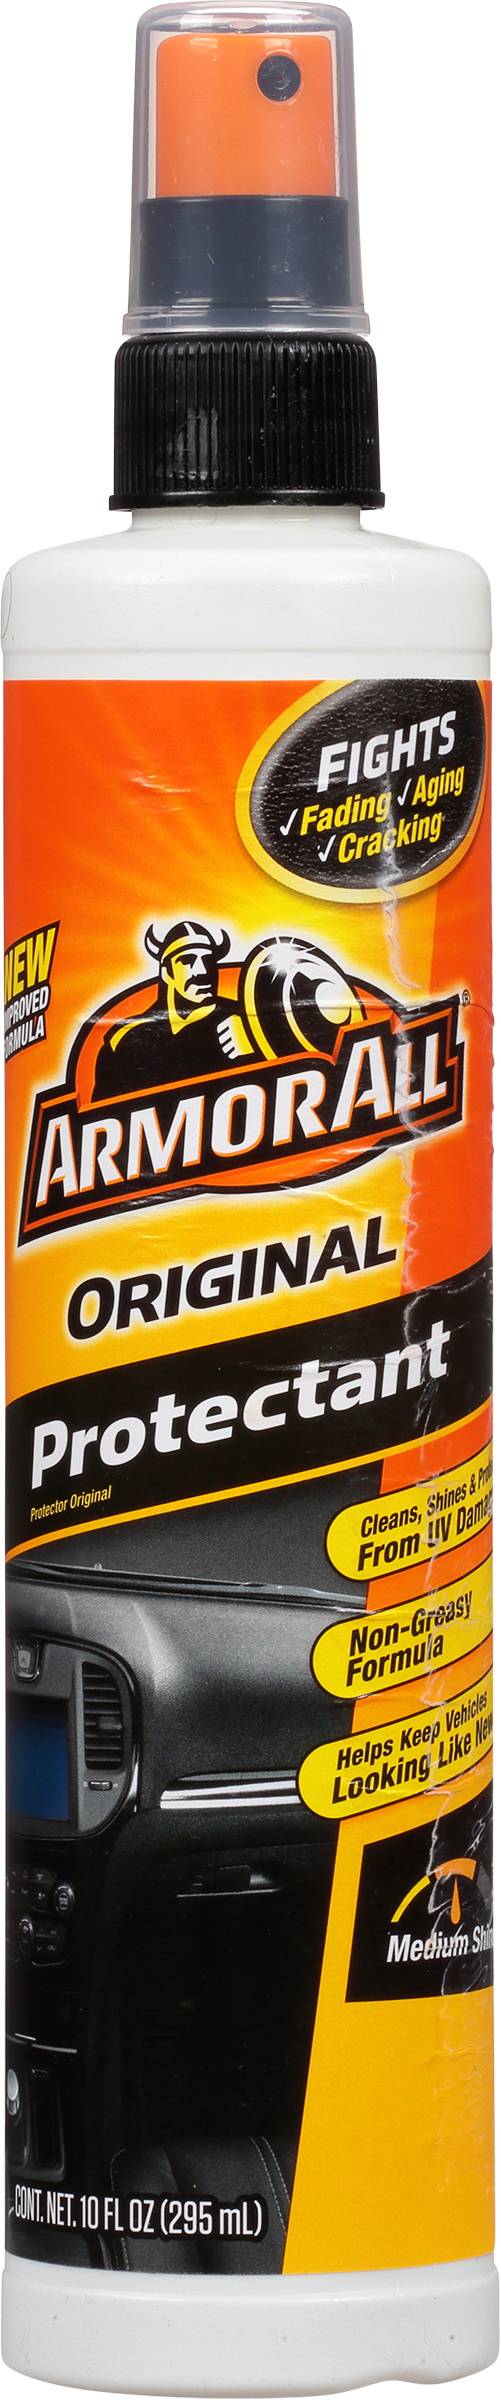 Armor All Original Protectant (10 fl oz)